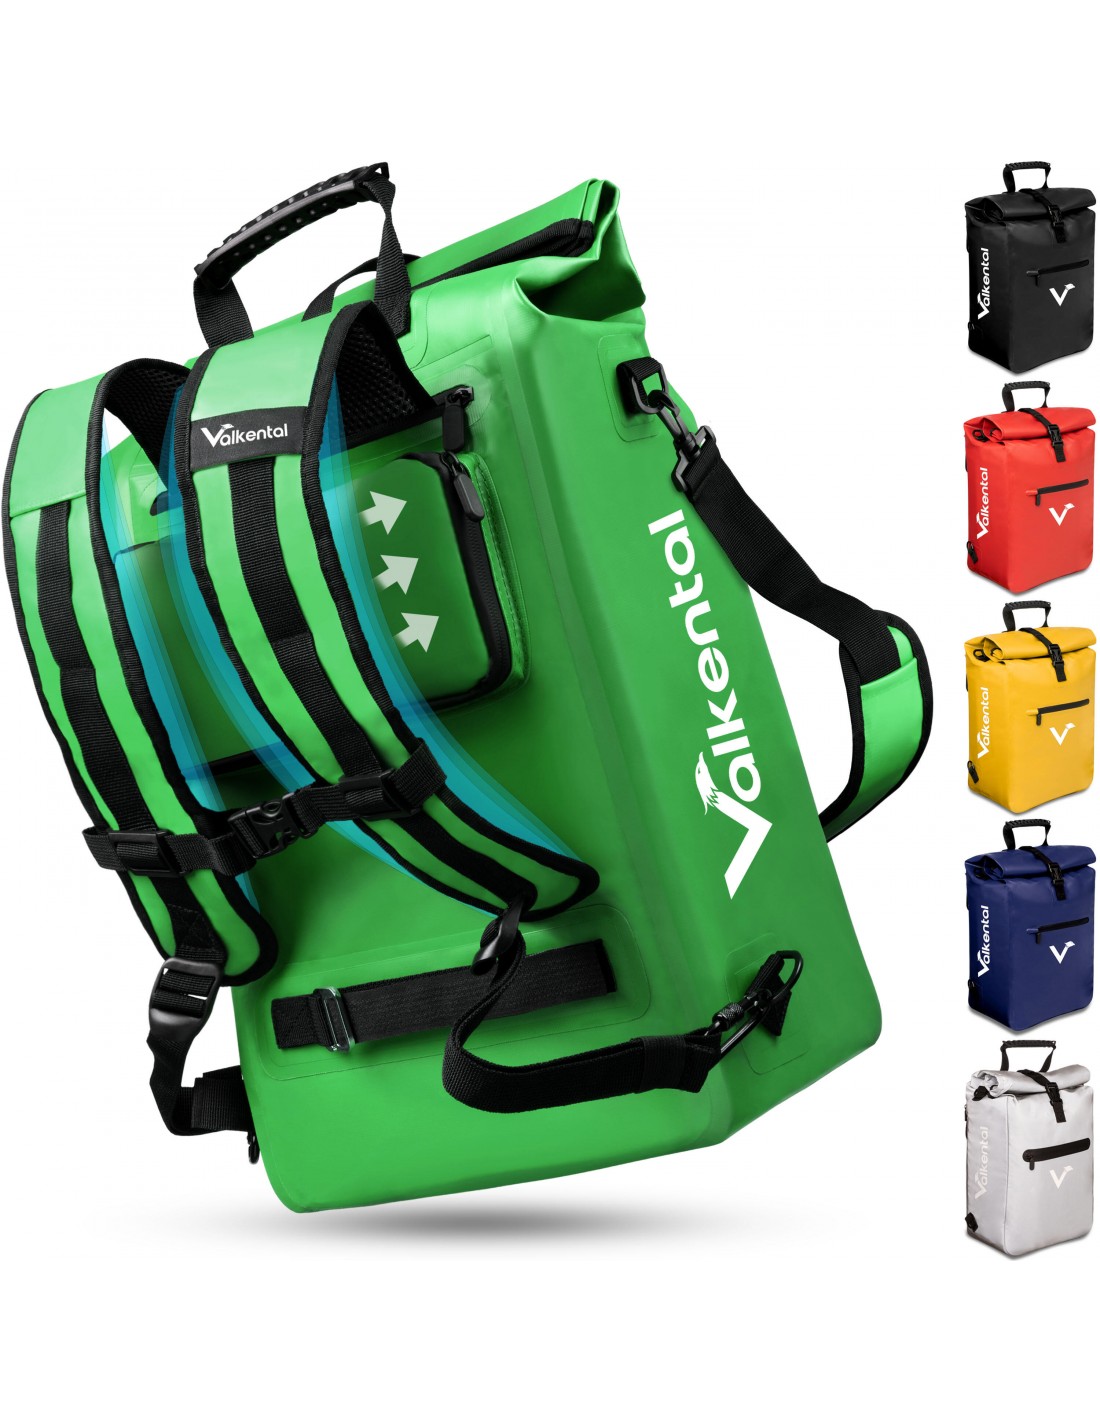 Valkental ValkOne 3in1 Fahrradtasche - perfekt für deinen Alltag, grün Taschenvariante - Gepäckträgertaschen, von Valkental